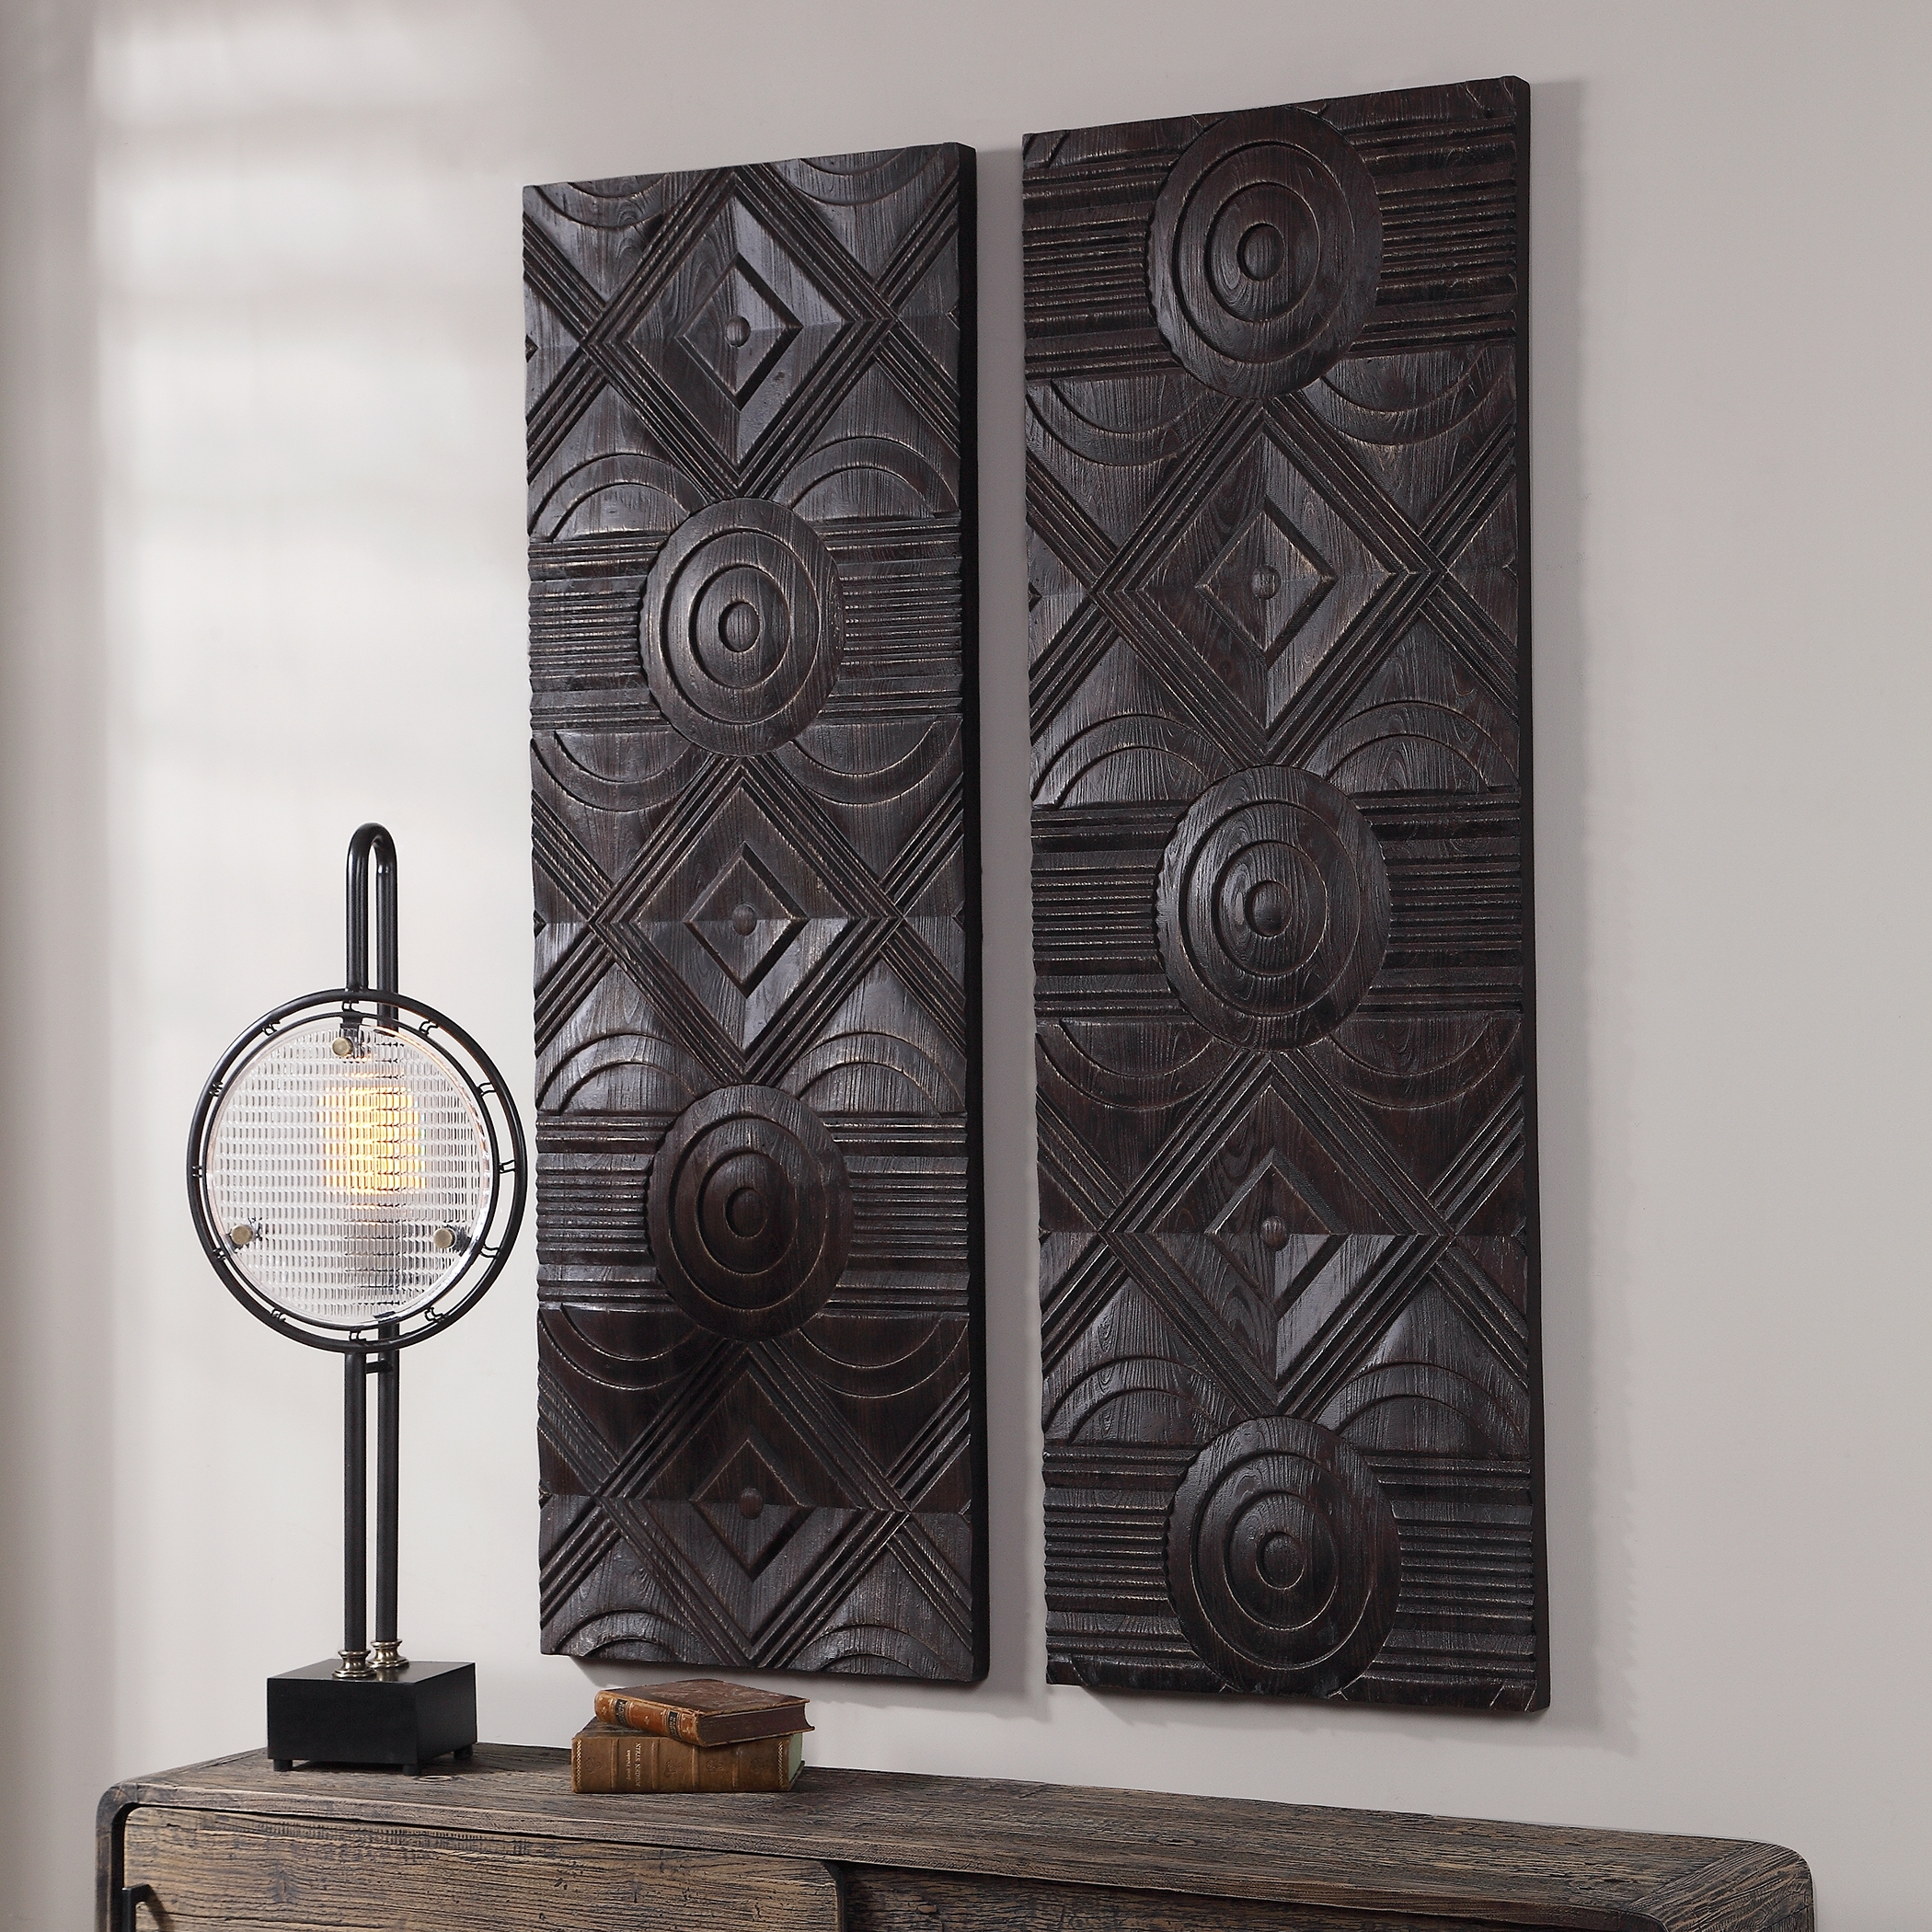 Asuka Carved Wood Wall Panels, Set/2 - Image 2